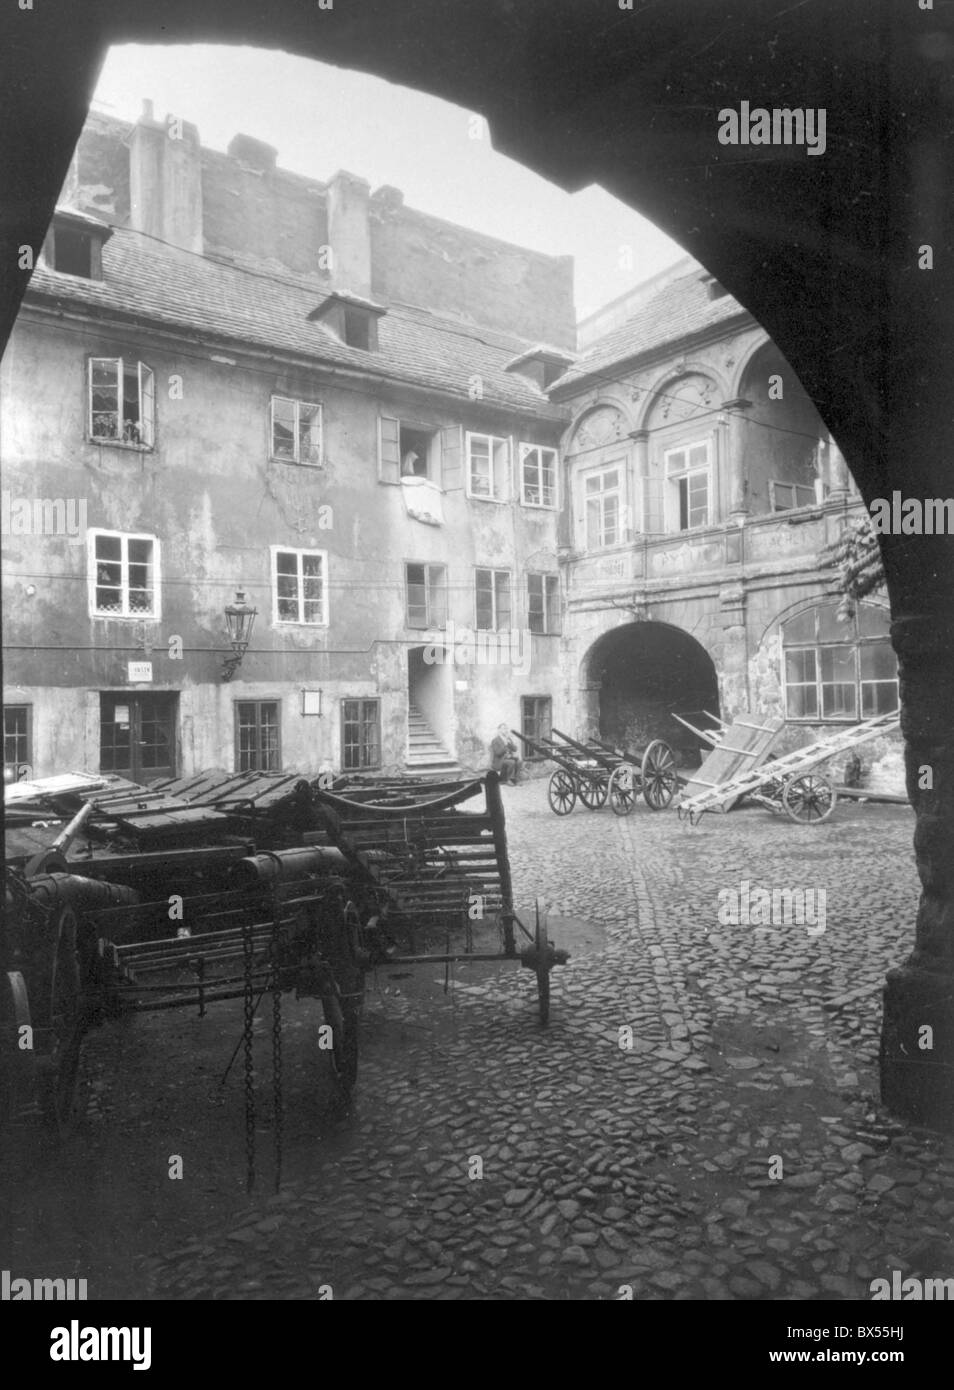 Praga 1934, vintage fotografia del pittoresco cortile con carretti a mano. Foto Stock